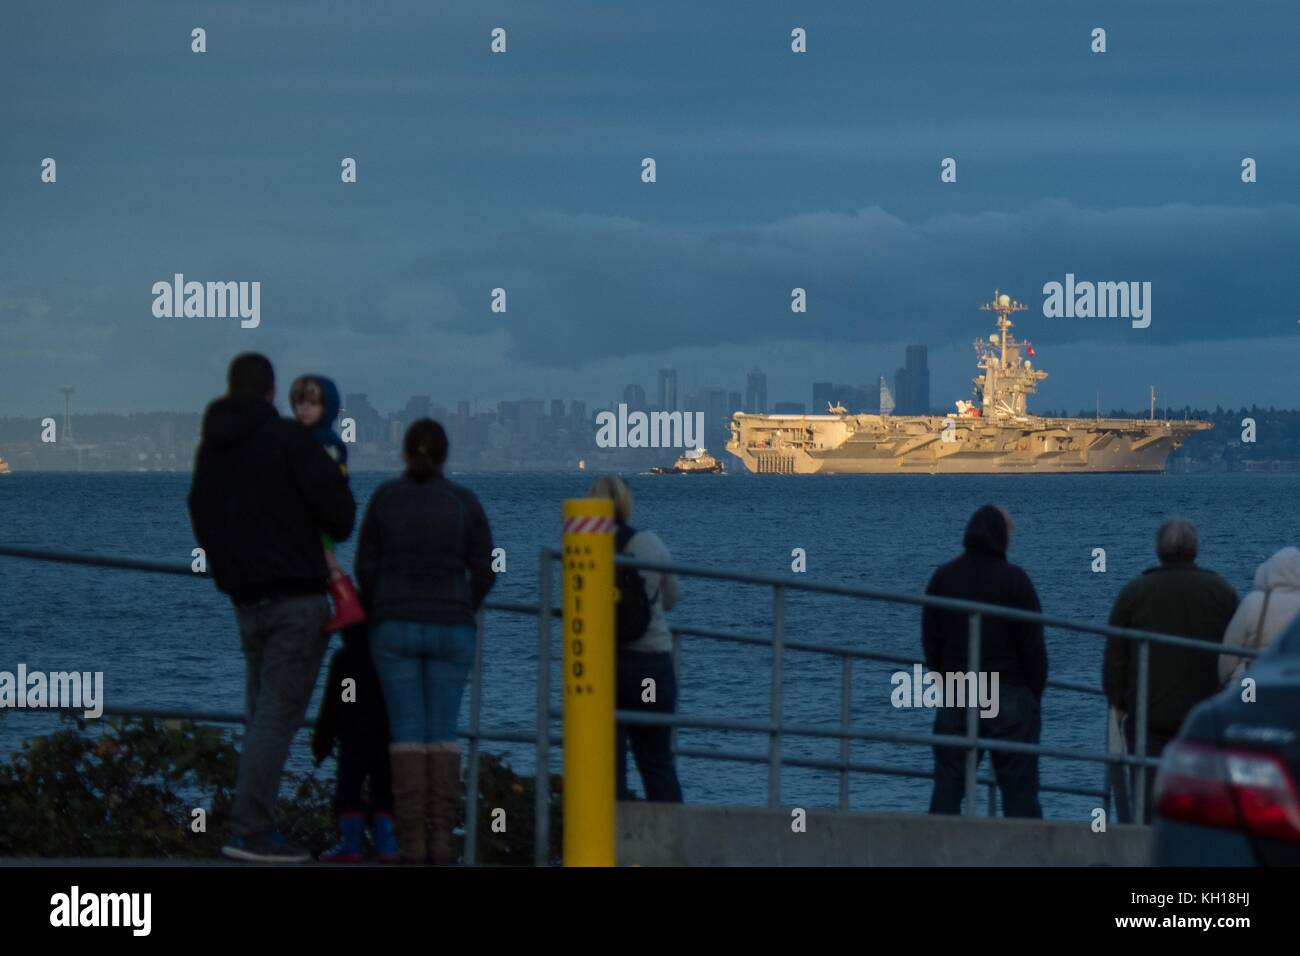 Les gens regardent la marine américaine de classe nimitz porte-avions USS John C. Stennis transite l'Elliott Bay avec le Seattle City skyline en arrière-plan le 3 novembre 2017 à Manchester, dans l'État de Washington. (Photo de vaughan dill via planetpix) Banque D'Images